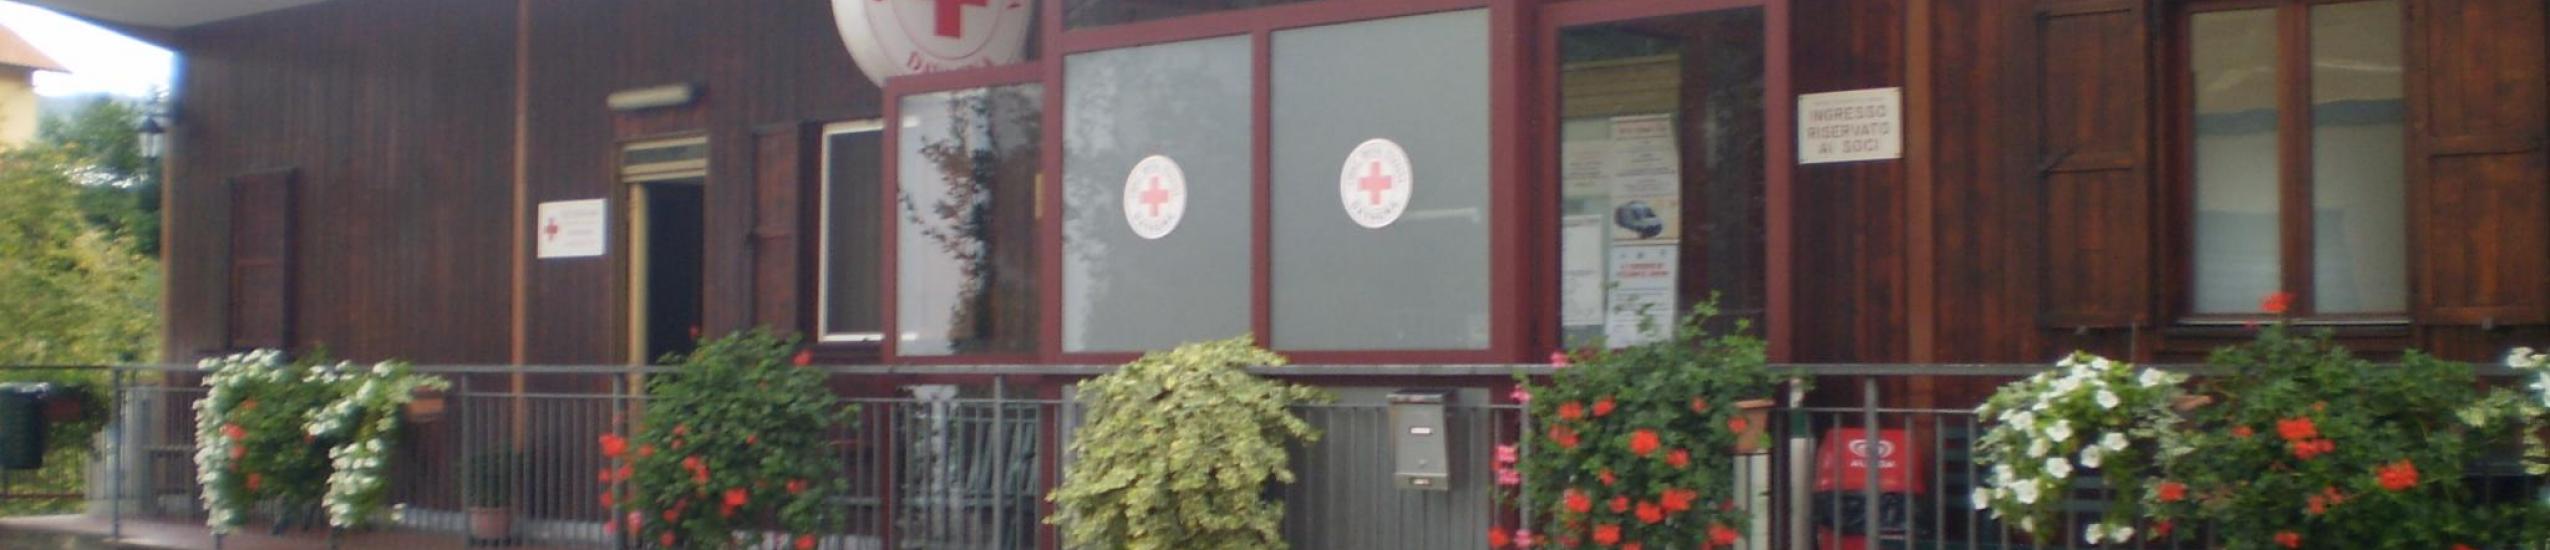 La sede della Croce rossa di Davagna